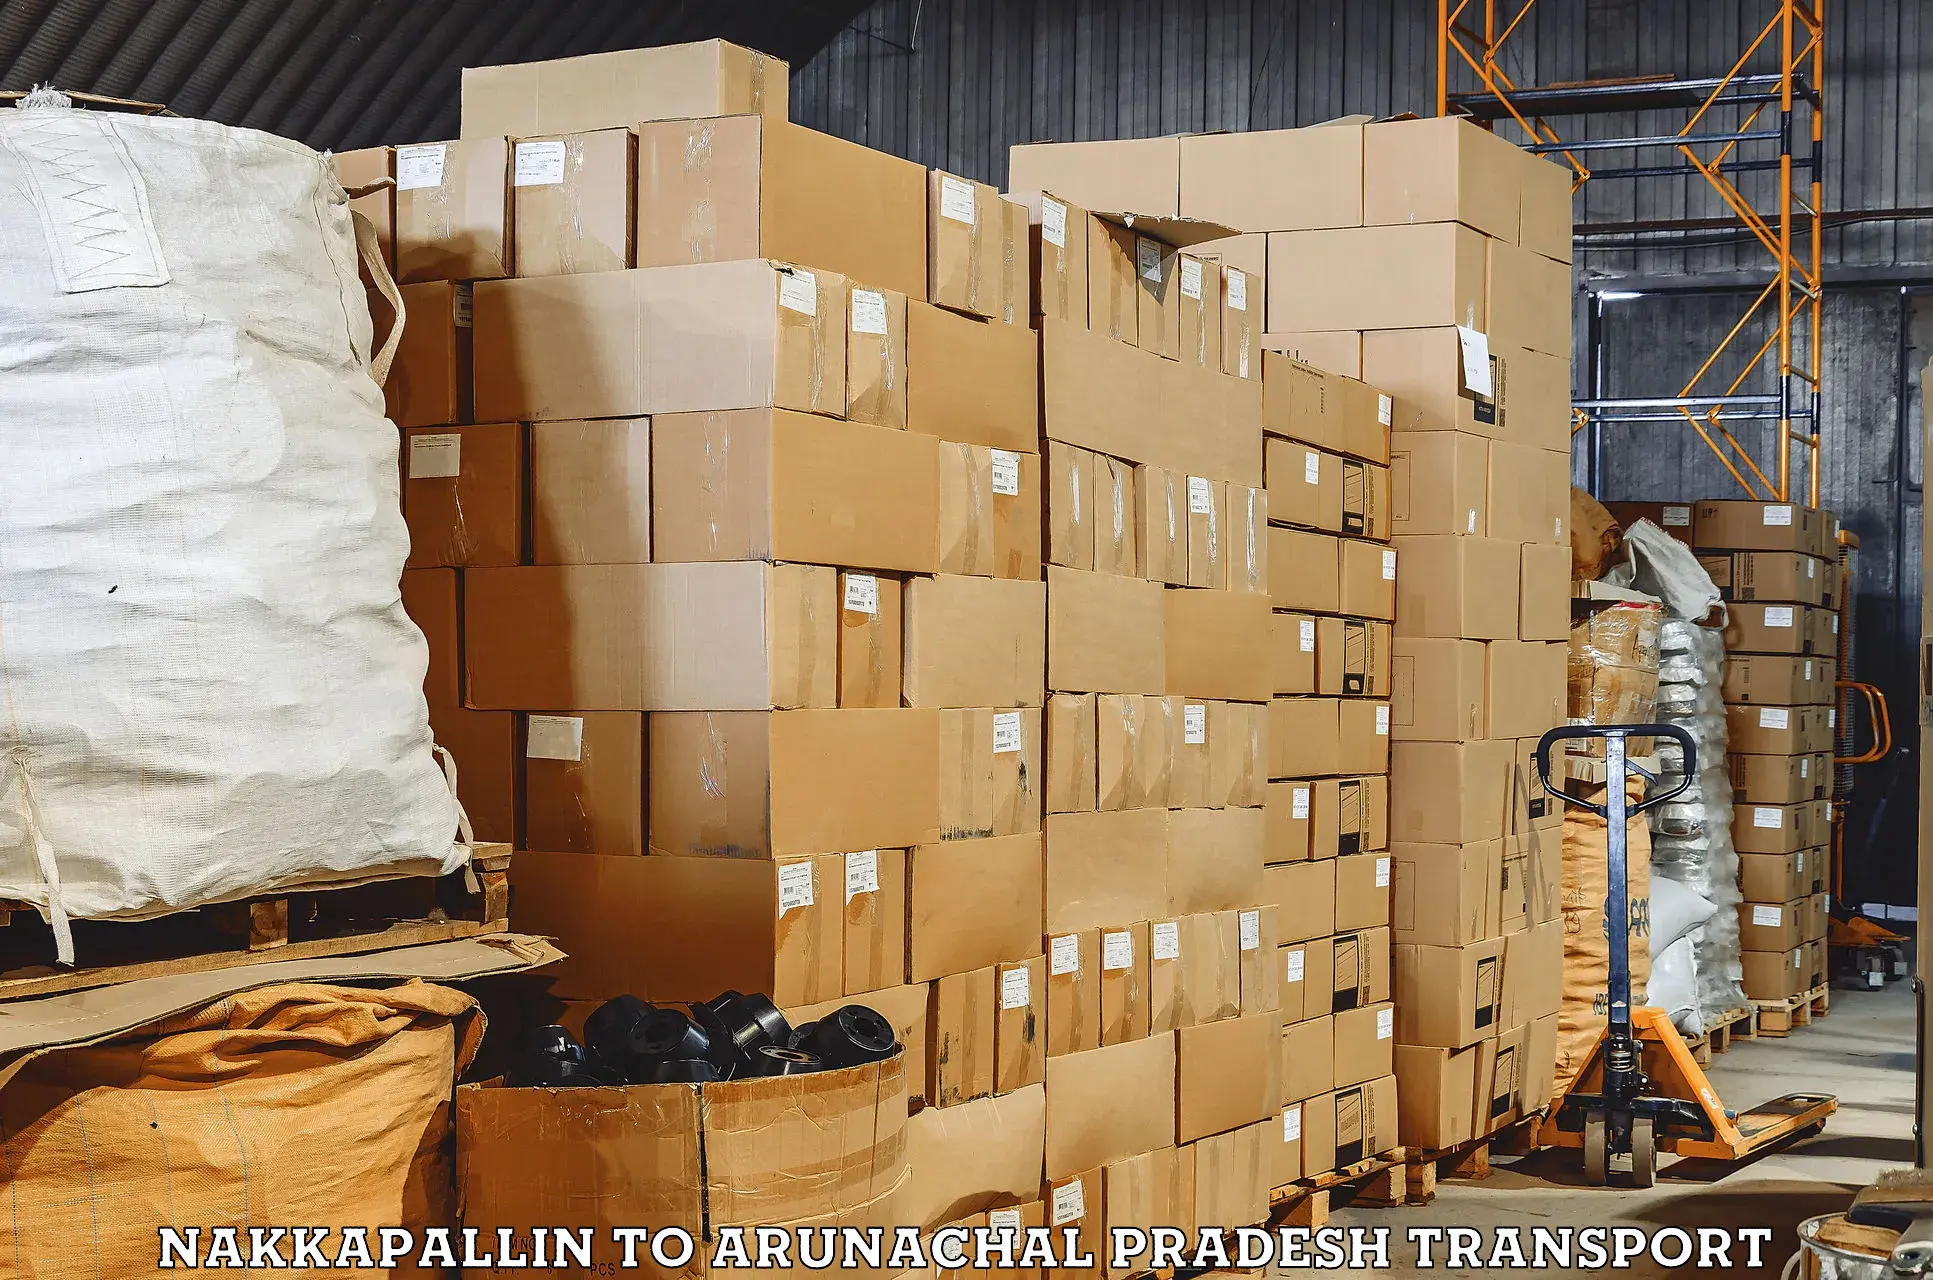 Daily parcel service transport Nakkapallin to Pasighat